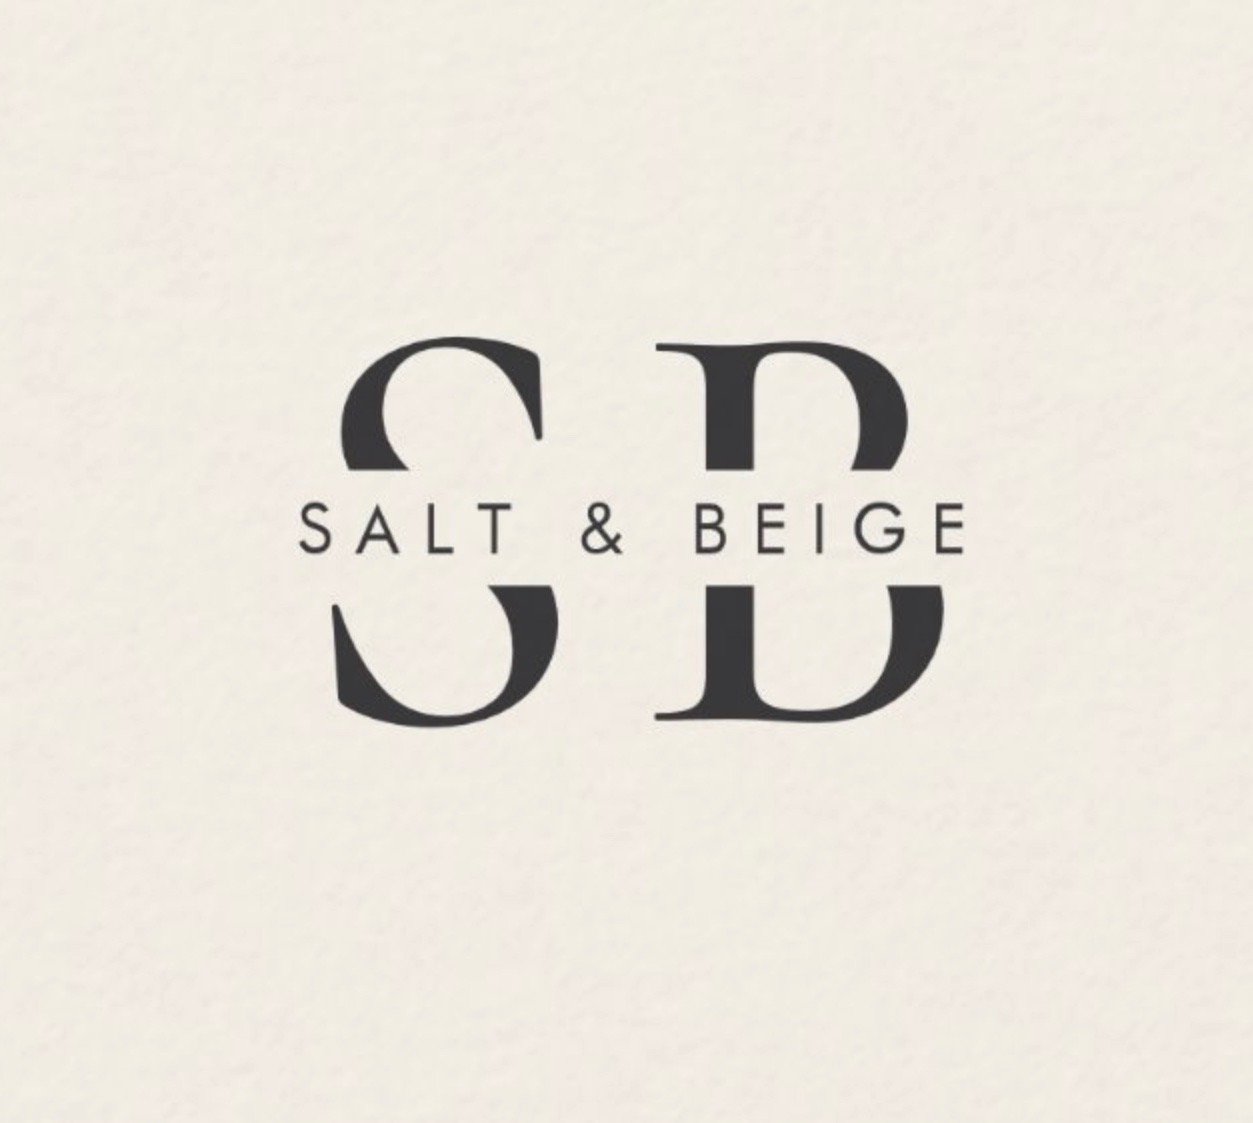 About — Salt & Beige